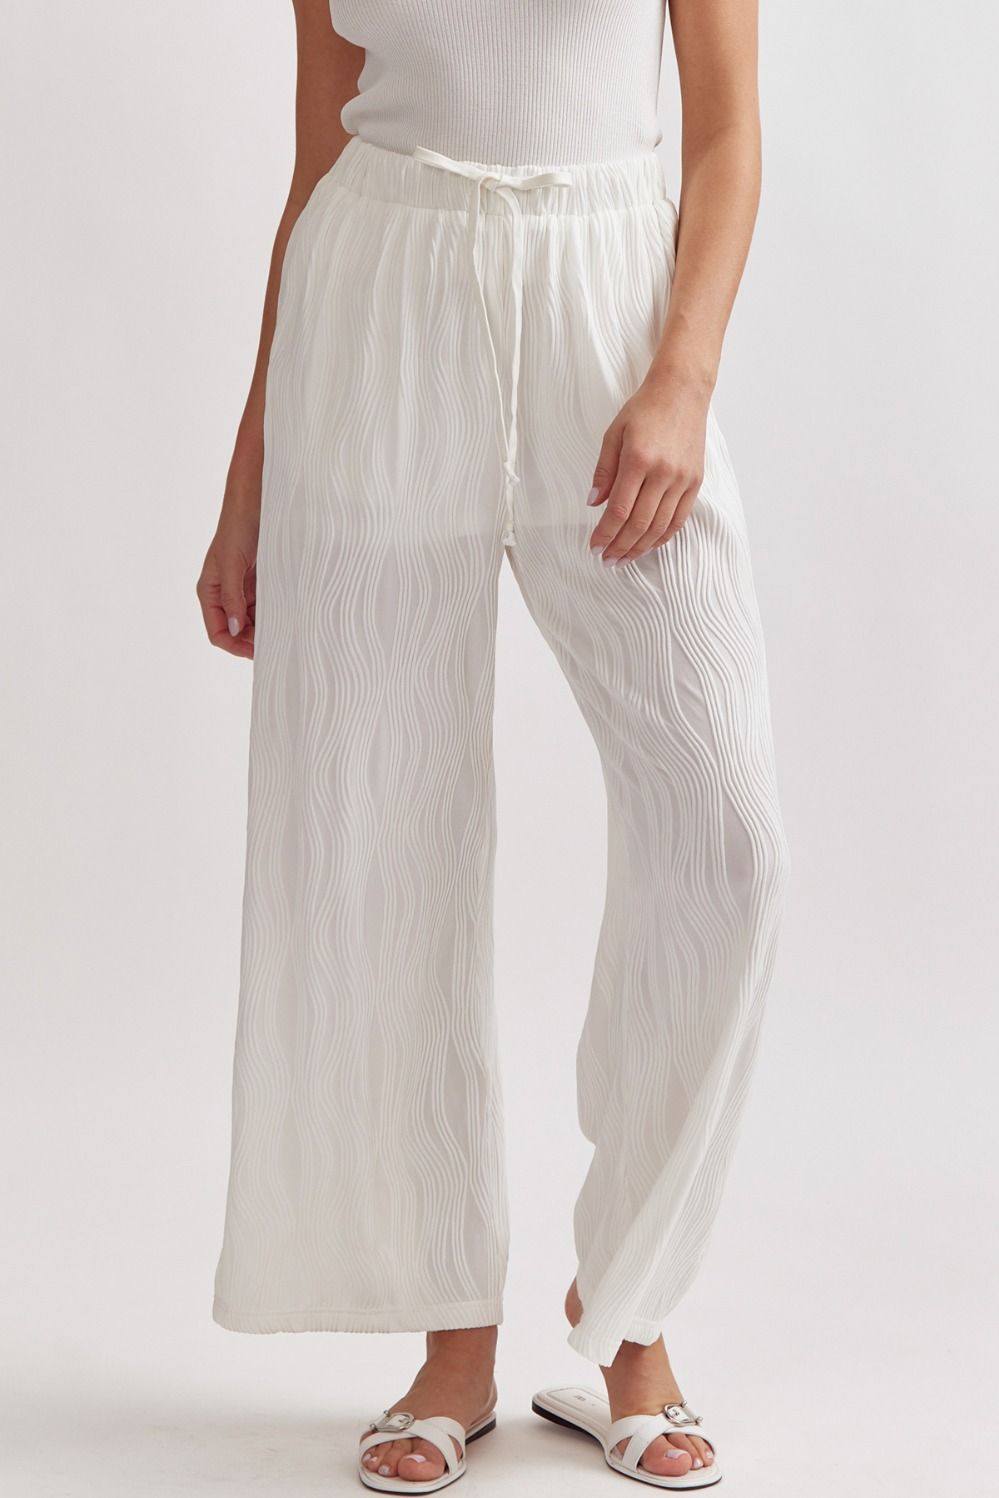 Caroline Wave Textured Drawstring Pants - White